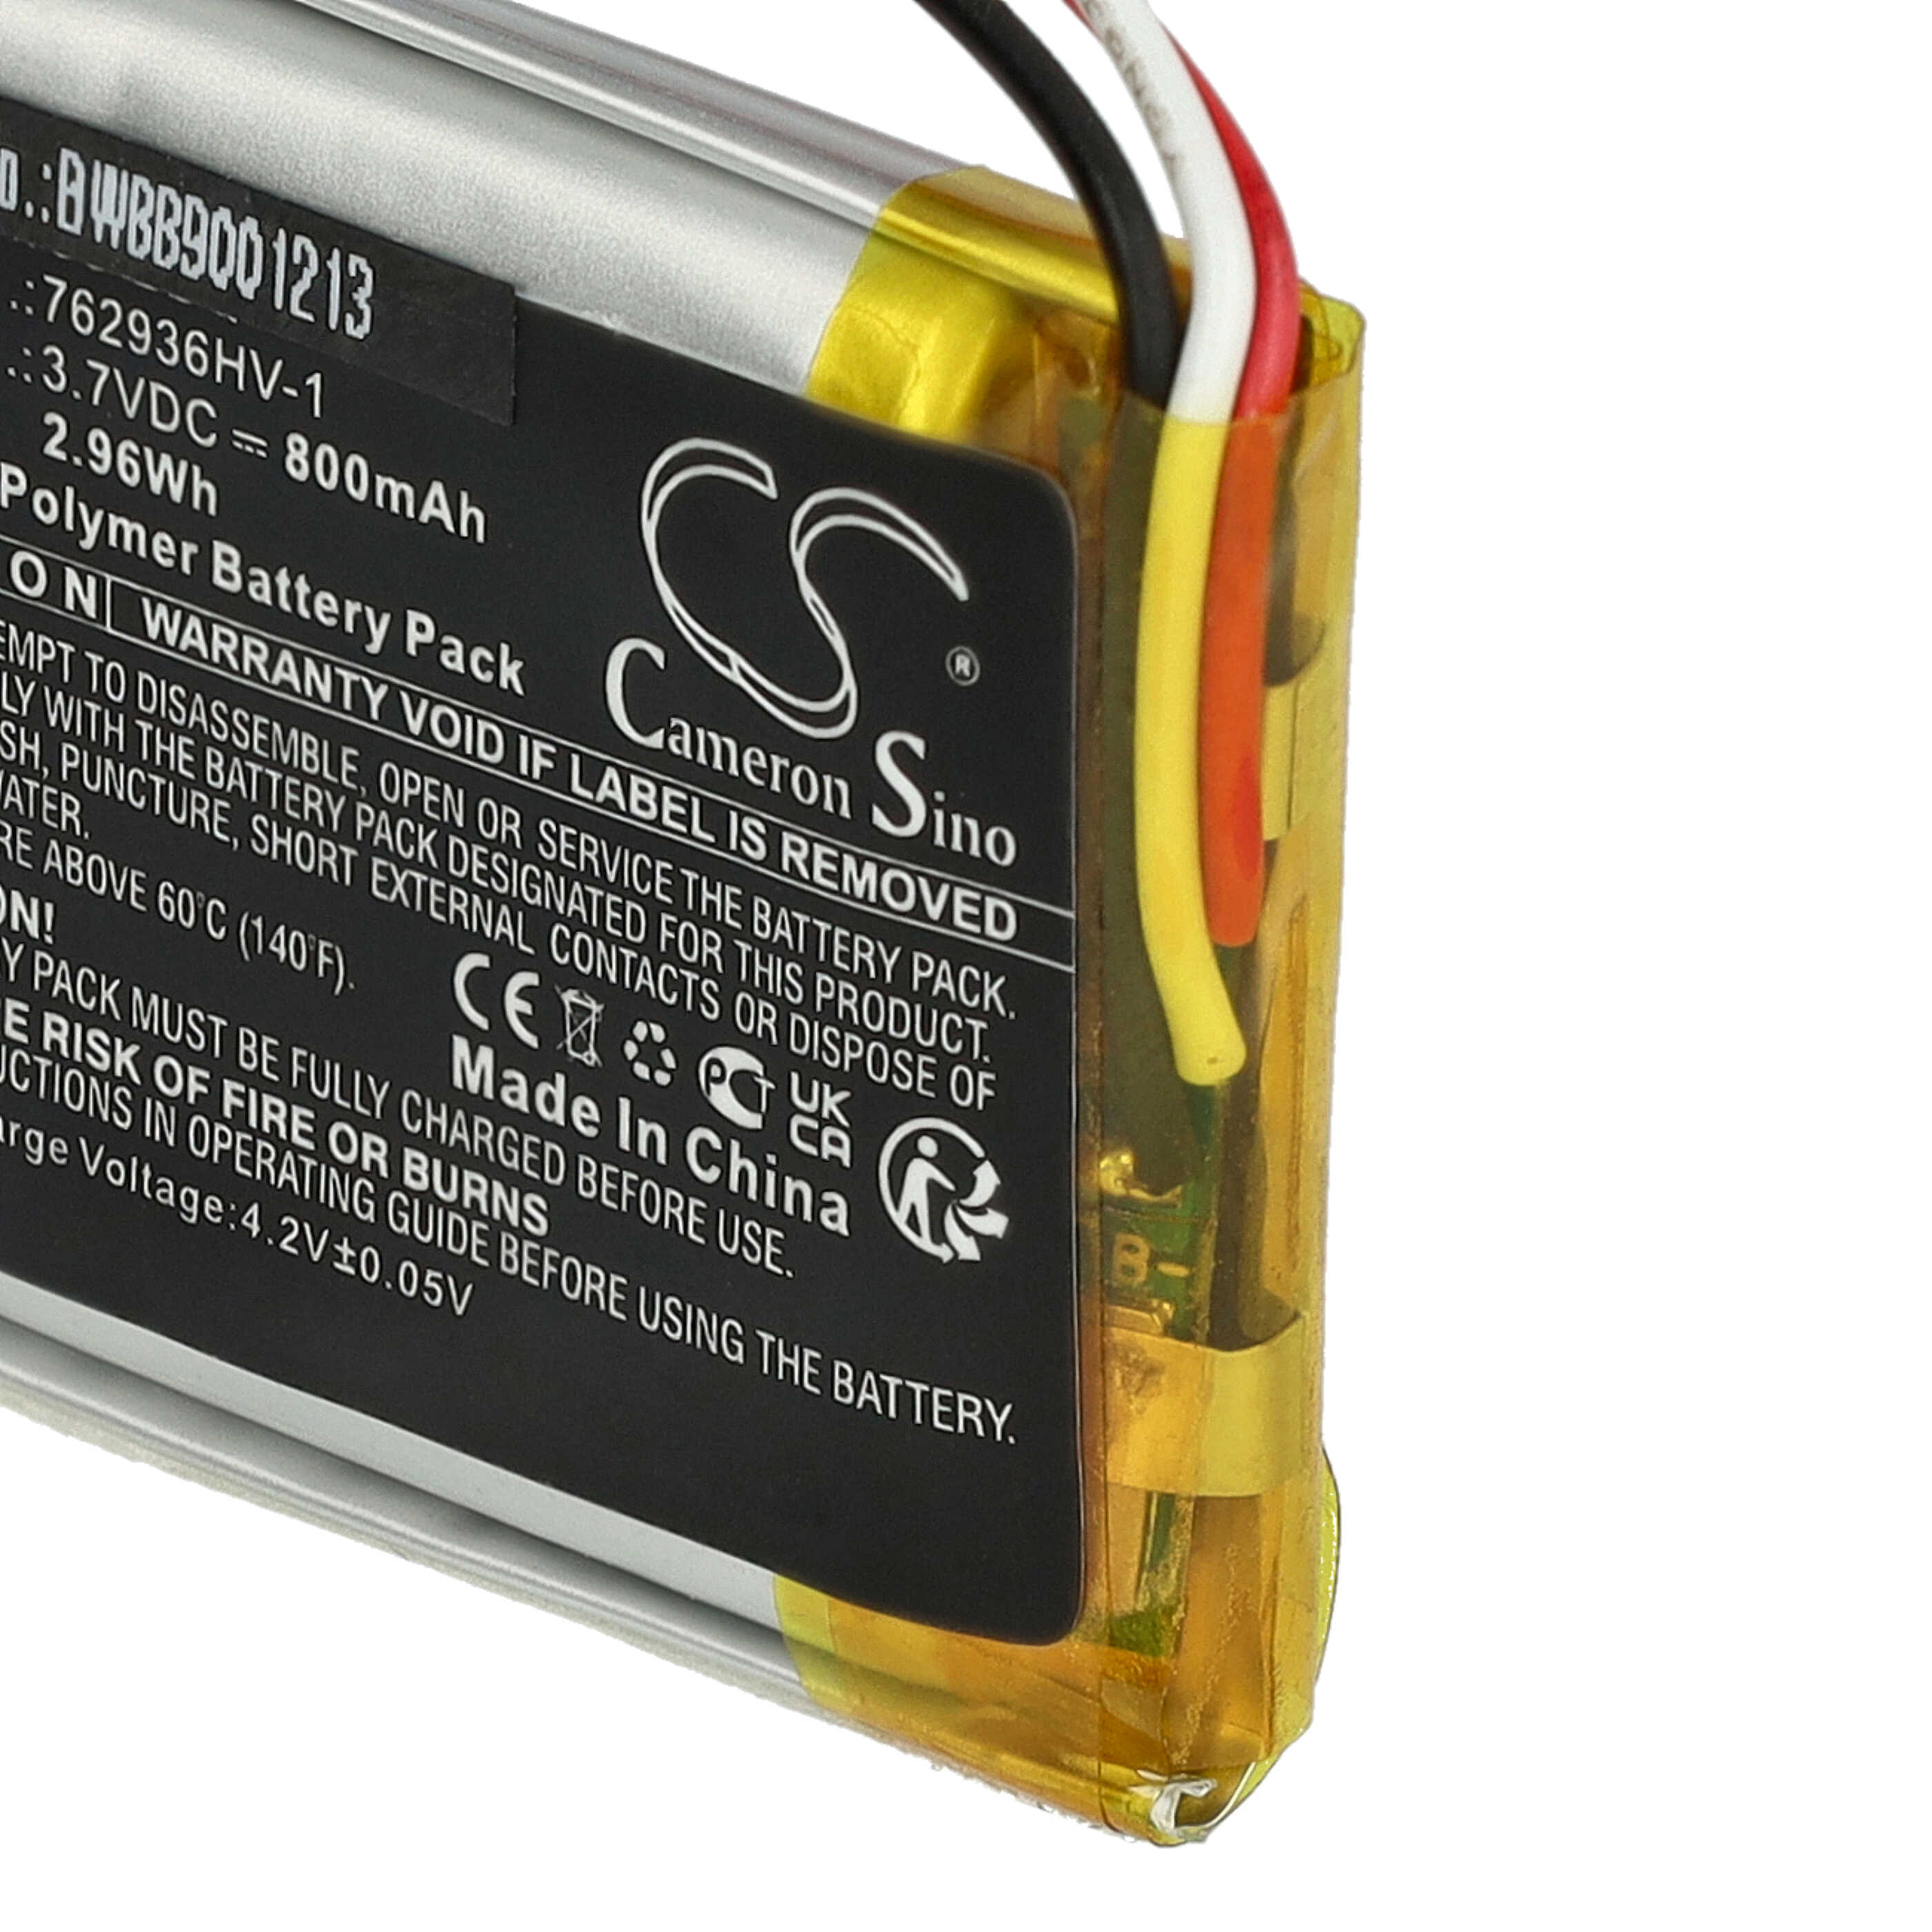 Batterie remplace Bose 762936HV-1 pour casque audio - 800mAh 3,7V Li-polymère